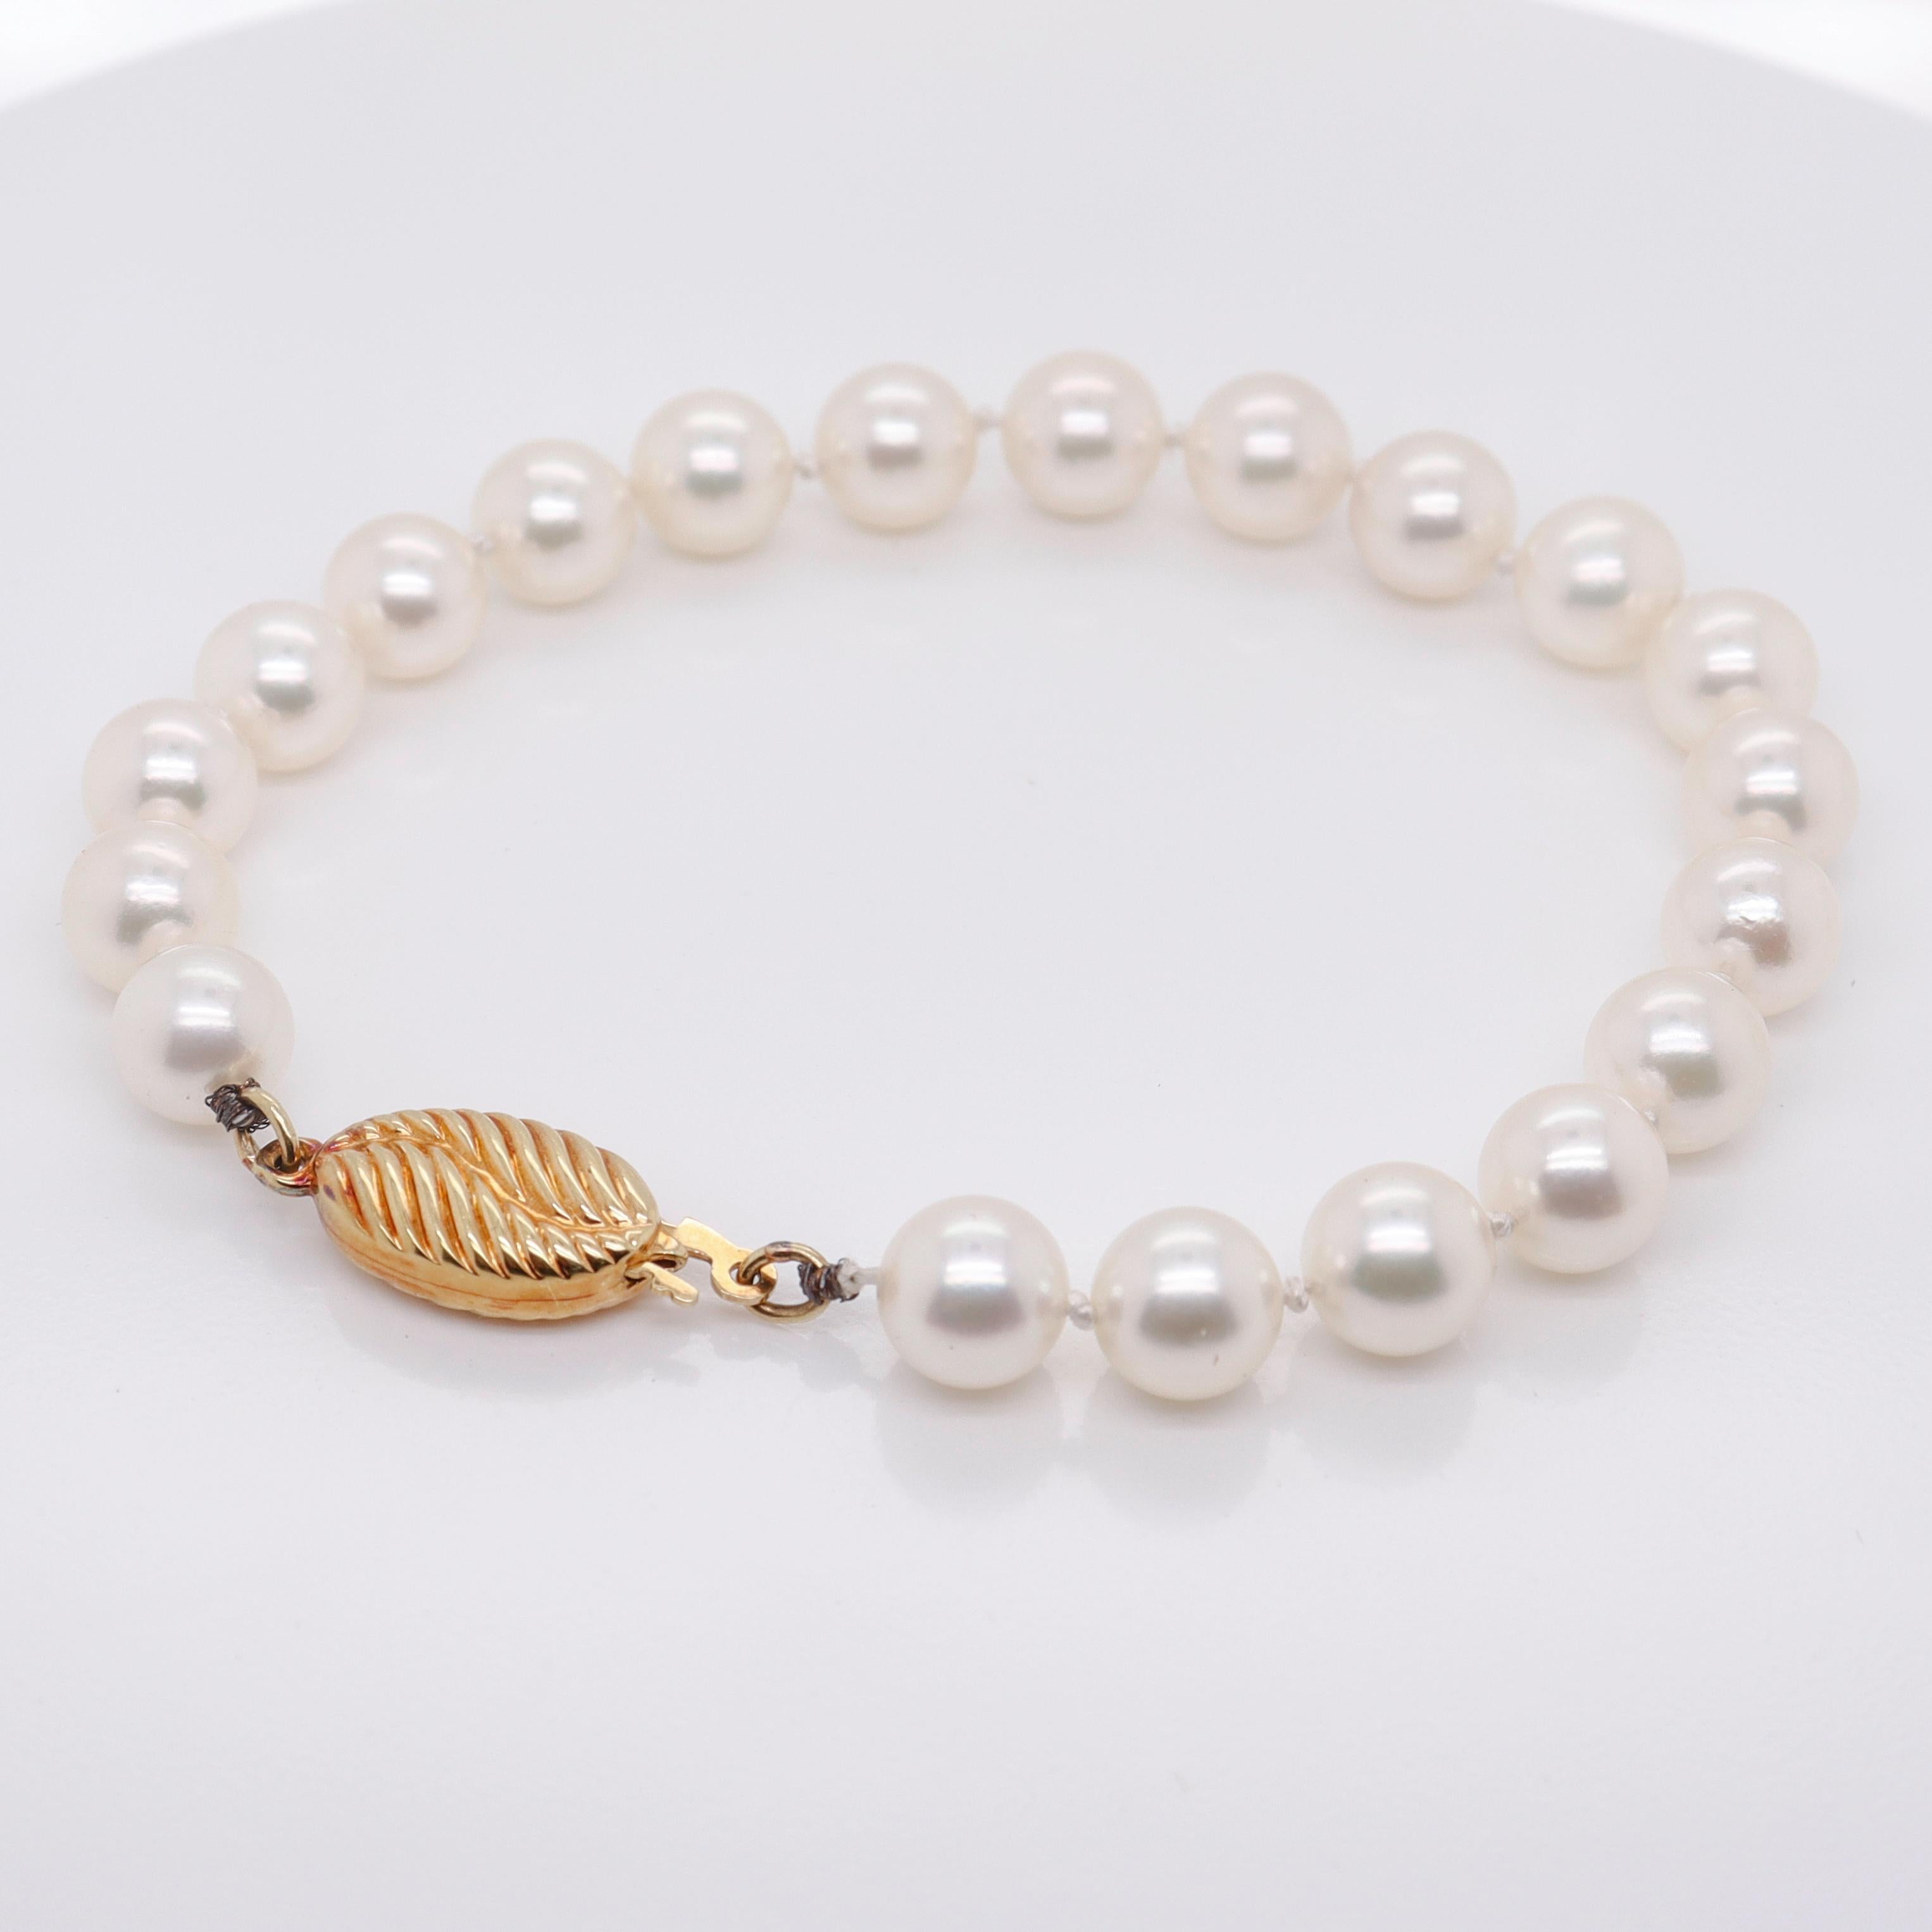 Un bracelet vintage en or 18k et perles de culture.

Avec des perles blanches rondes de 7 à 7,5 mm d'une couleur et d'un éclat très fins. 

Serti d'un fermoir en or 18k. 

Vendue à l'origine par Shapur Mozafarian de San Francisco. Accompagné de son